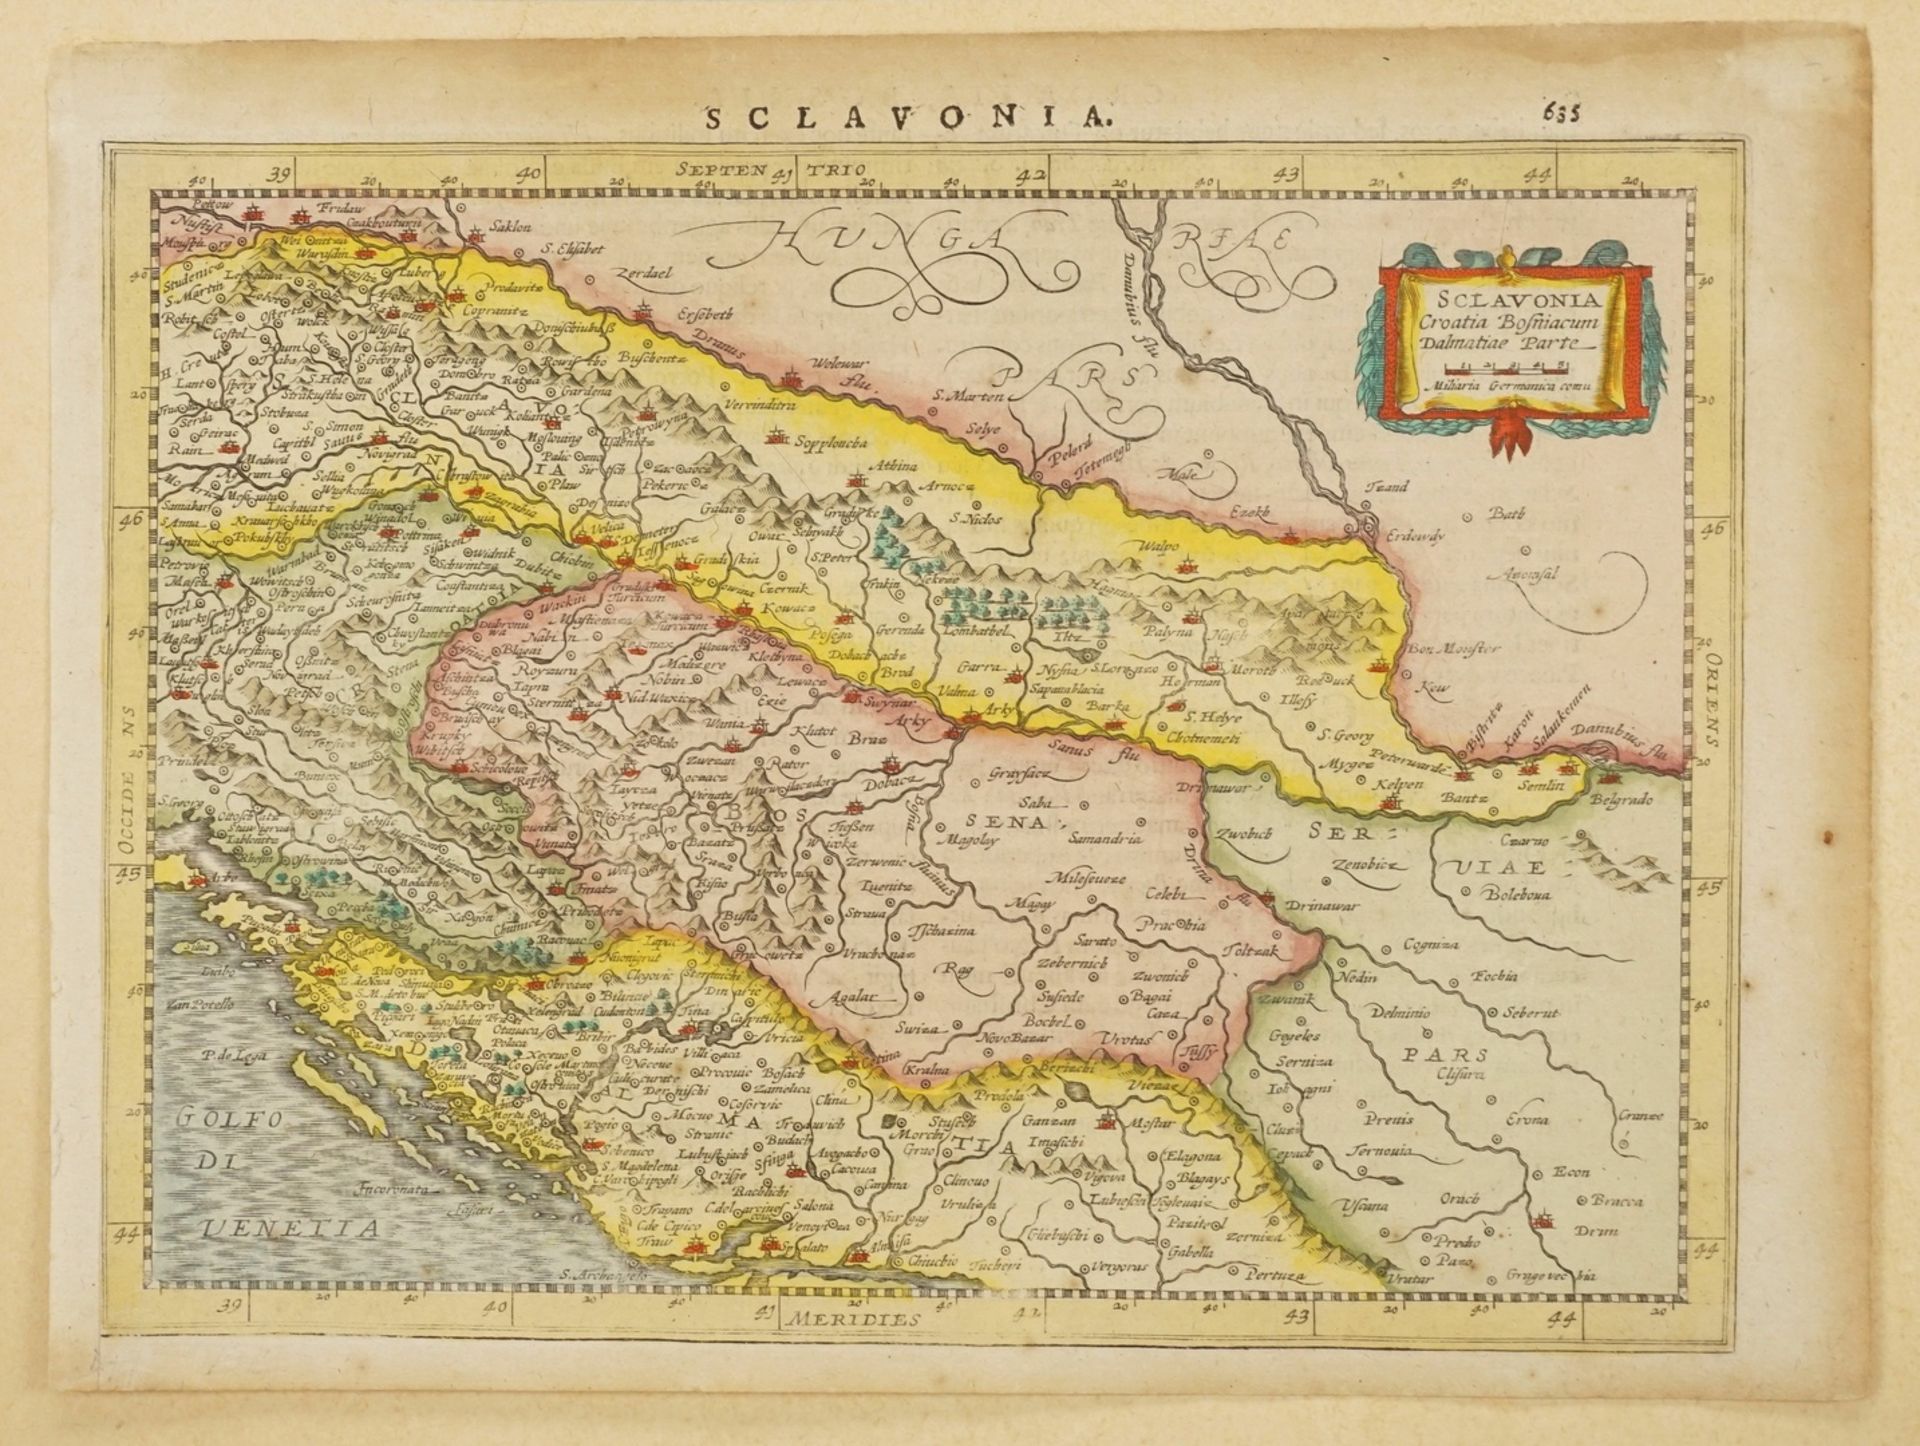 Pieter van den Keere, "Sclavonia" (Karte der westlichen Balkanhalbinsel) - Image 3 of 4